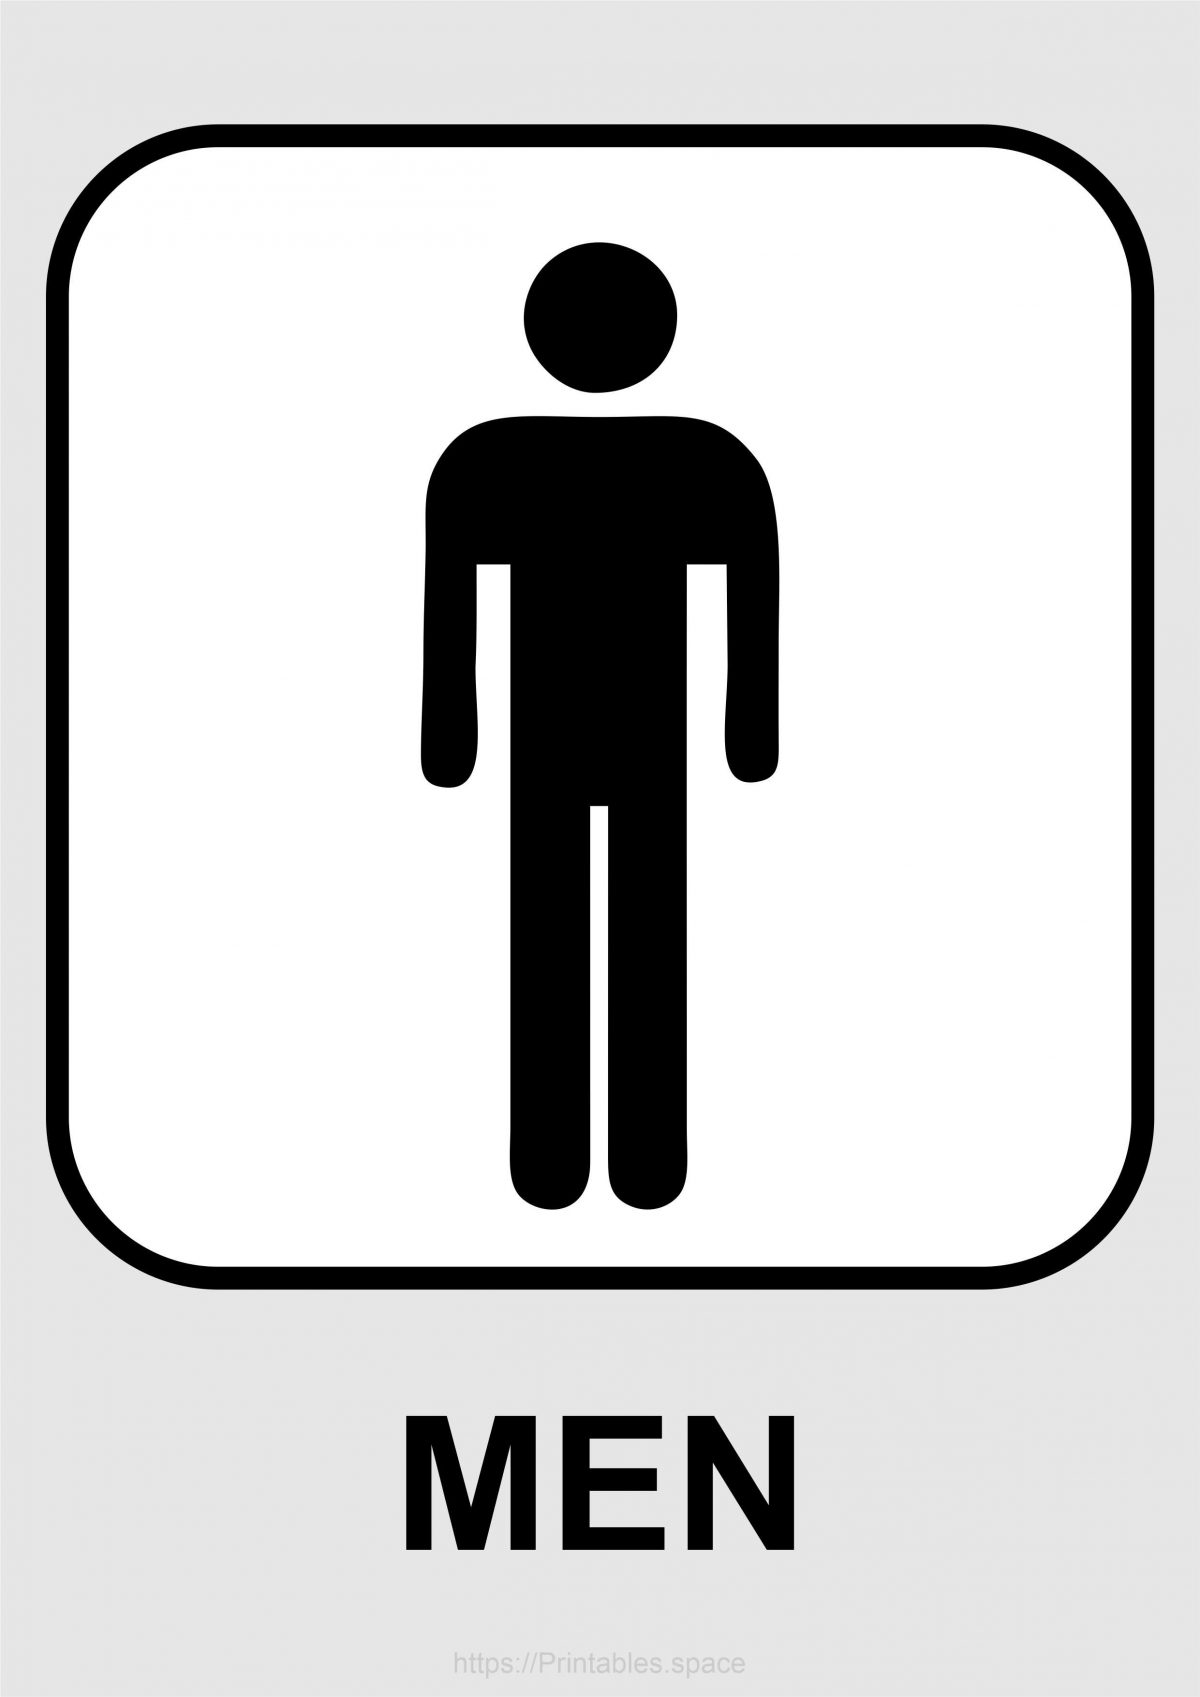 Men's Toilet Sign Printable